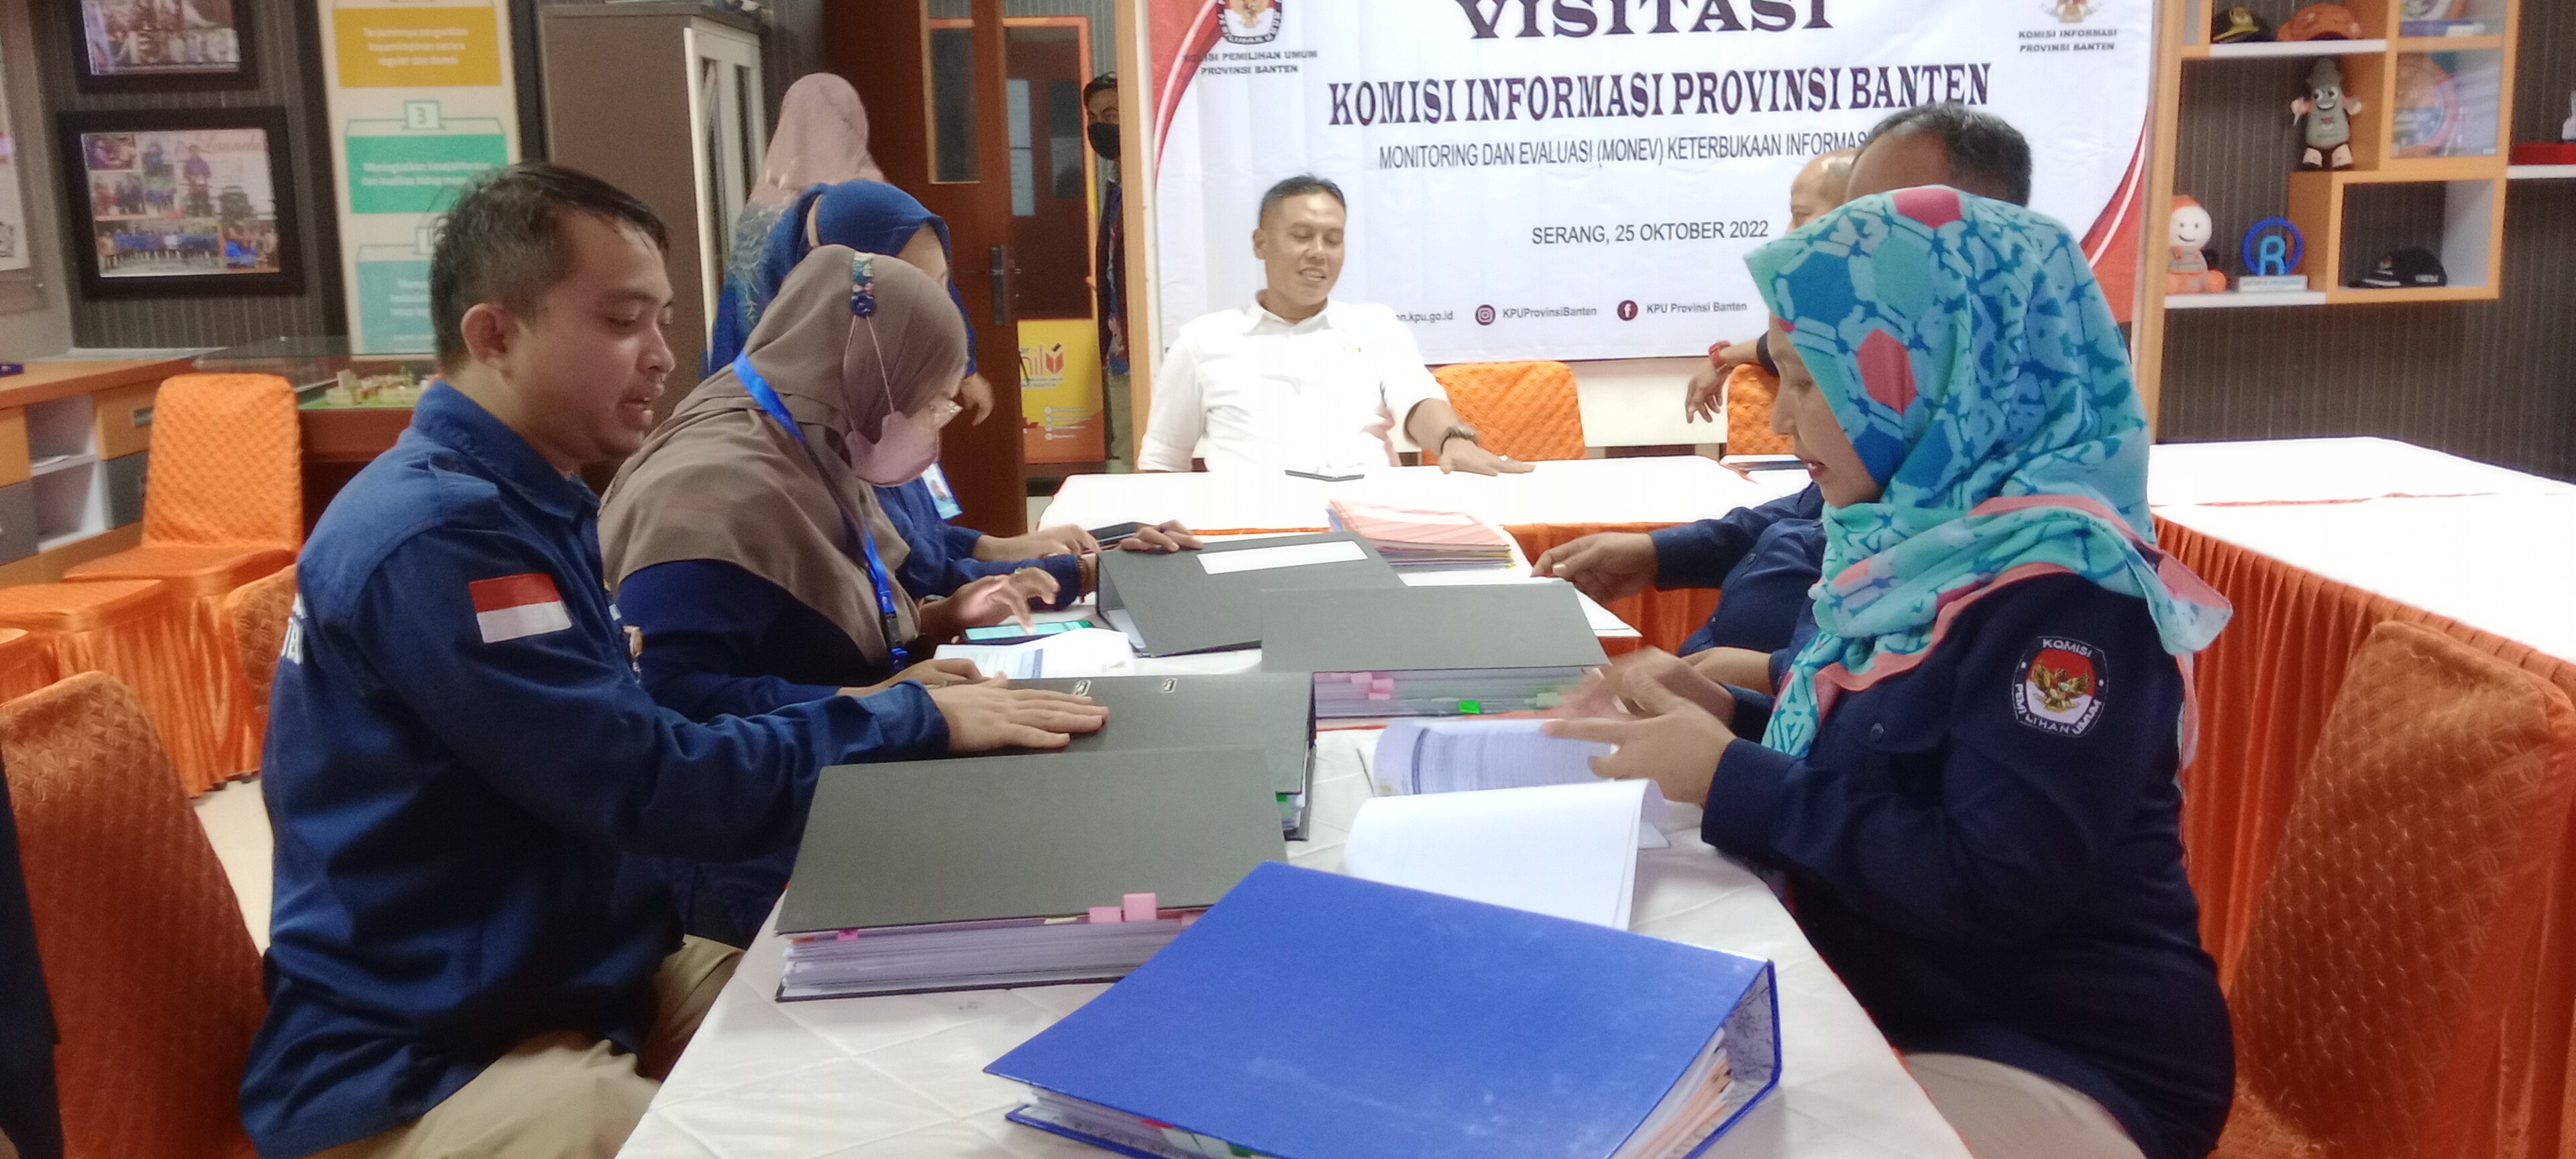 Visitasi Komisi Informasi Banten Monev PPID Tahun 2022